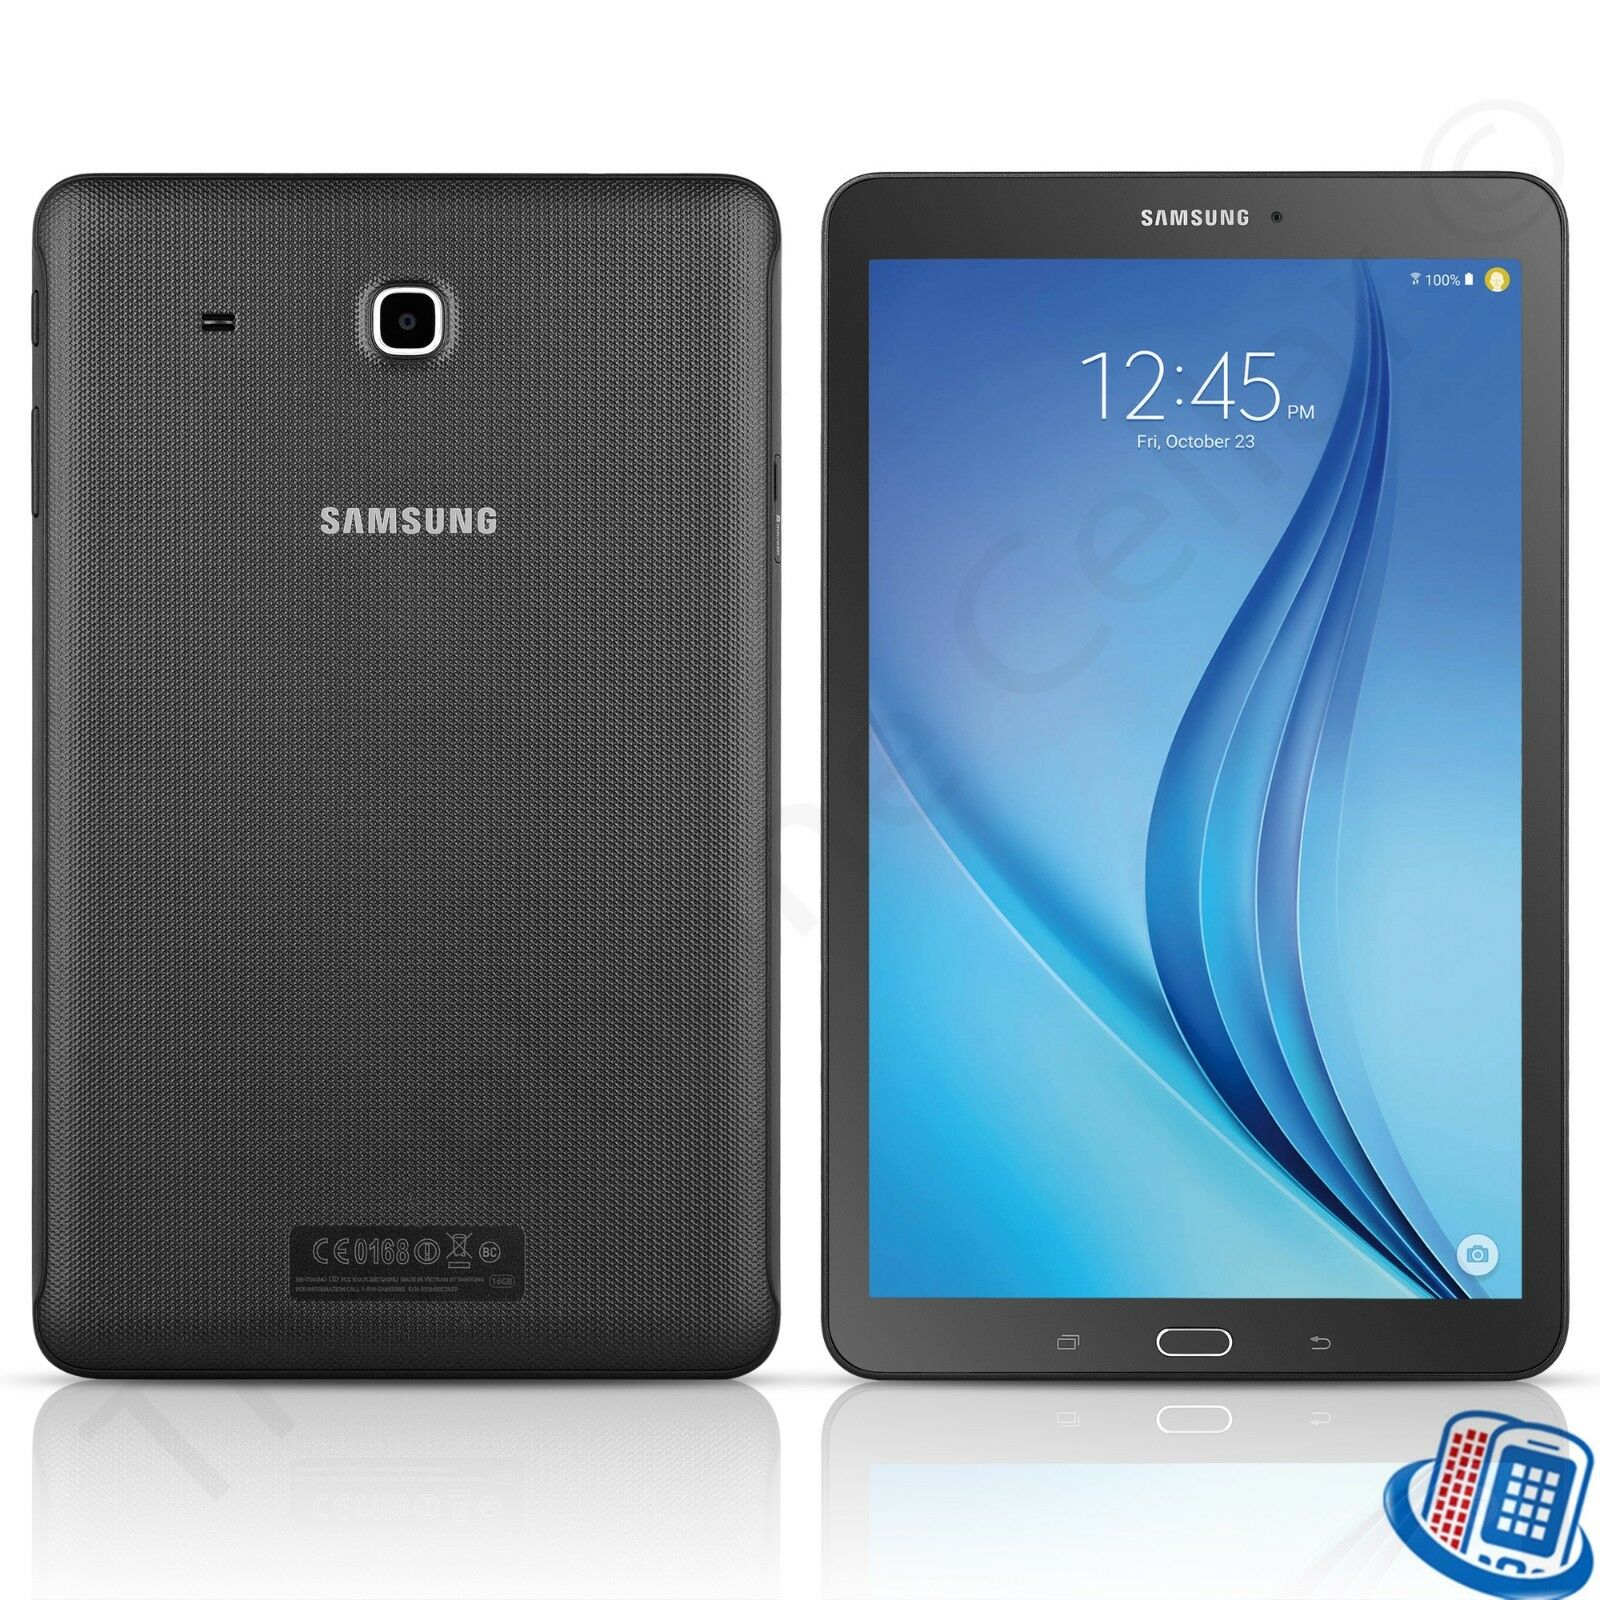 Samsung Galaxy Tab E 16GB 9.6-Inch Tablet SM-T560 -Black - T560NZKUXAR